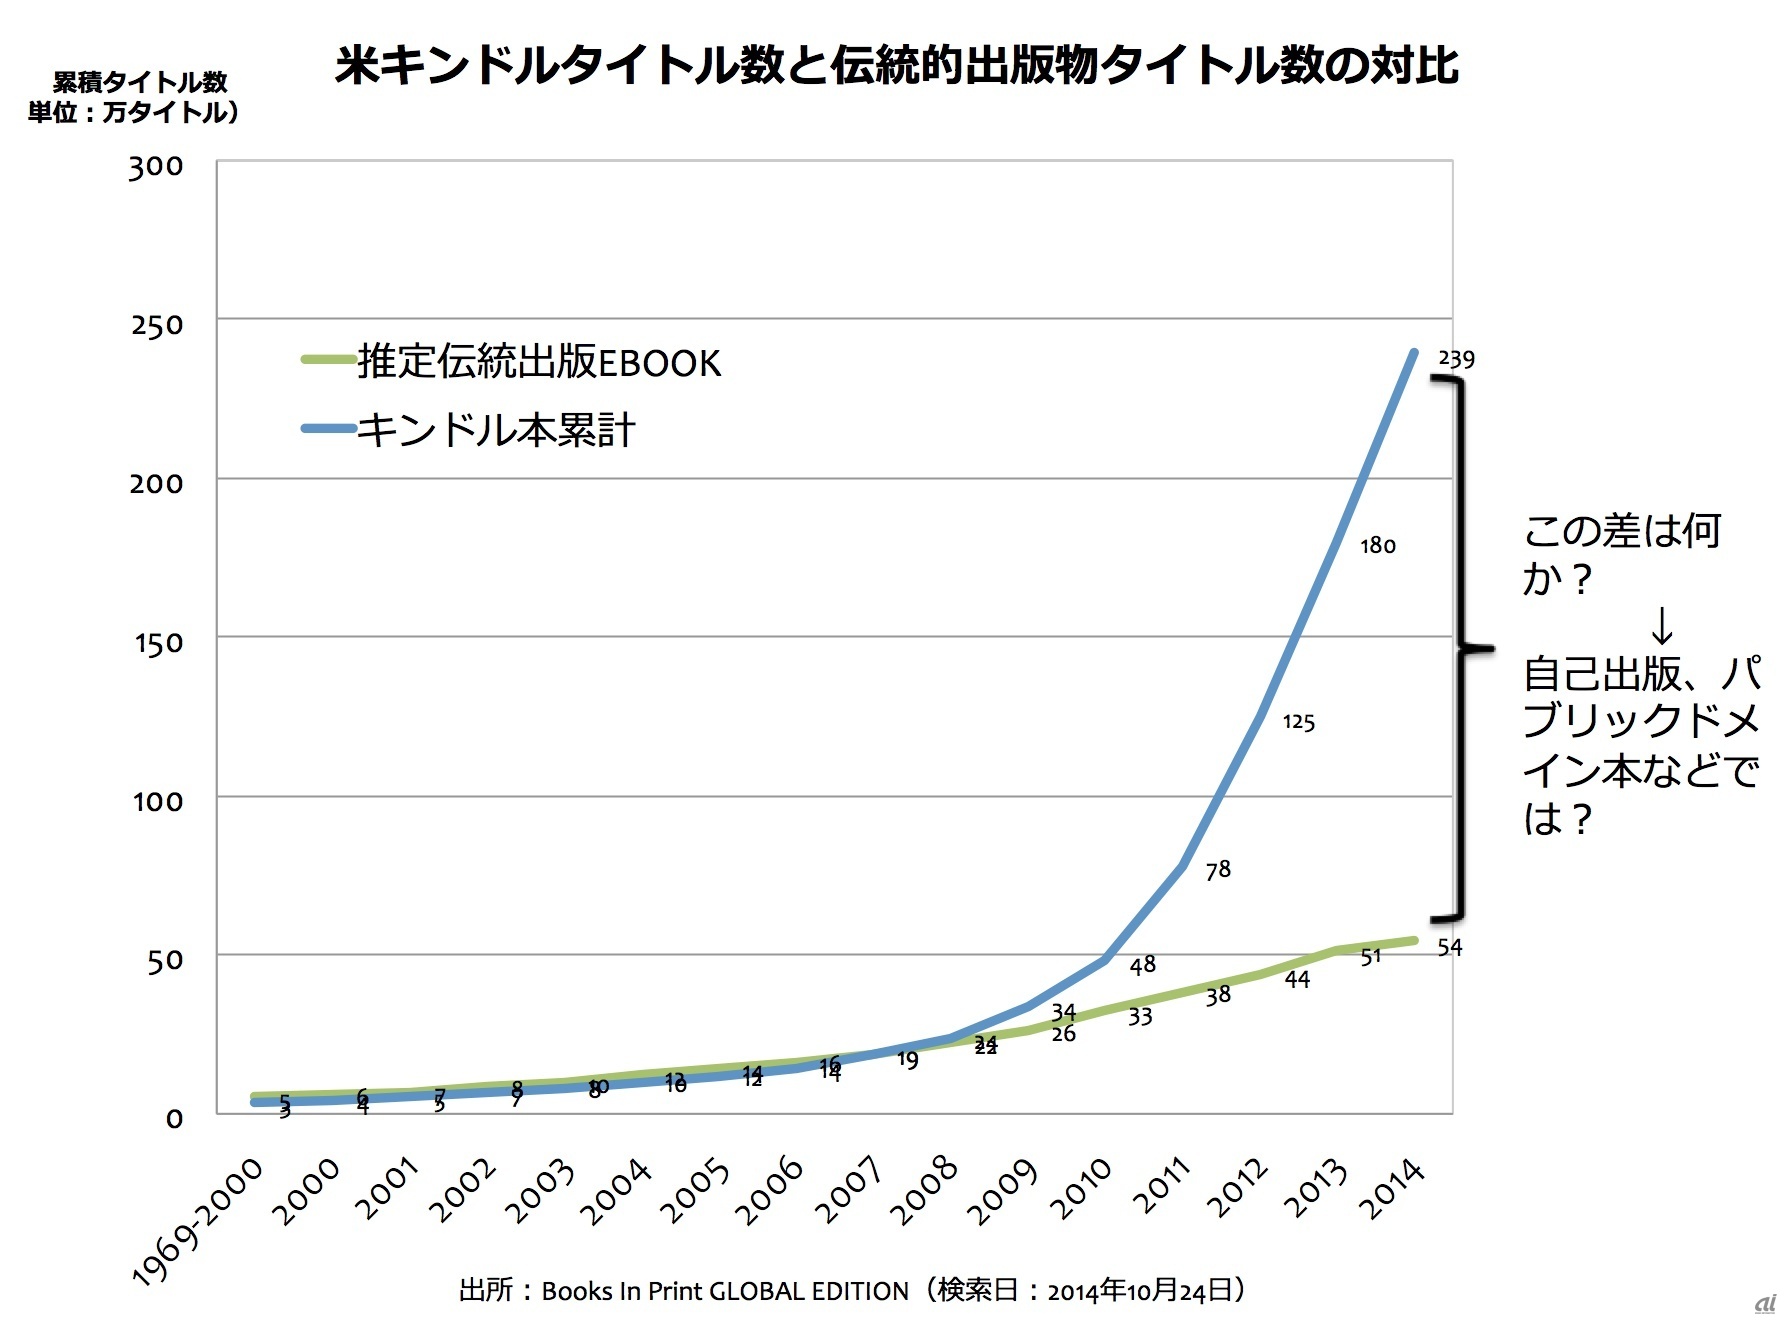 米Kindleタイトル数と伝統的出版物タイトル数の対比